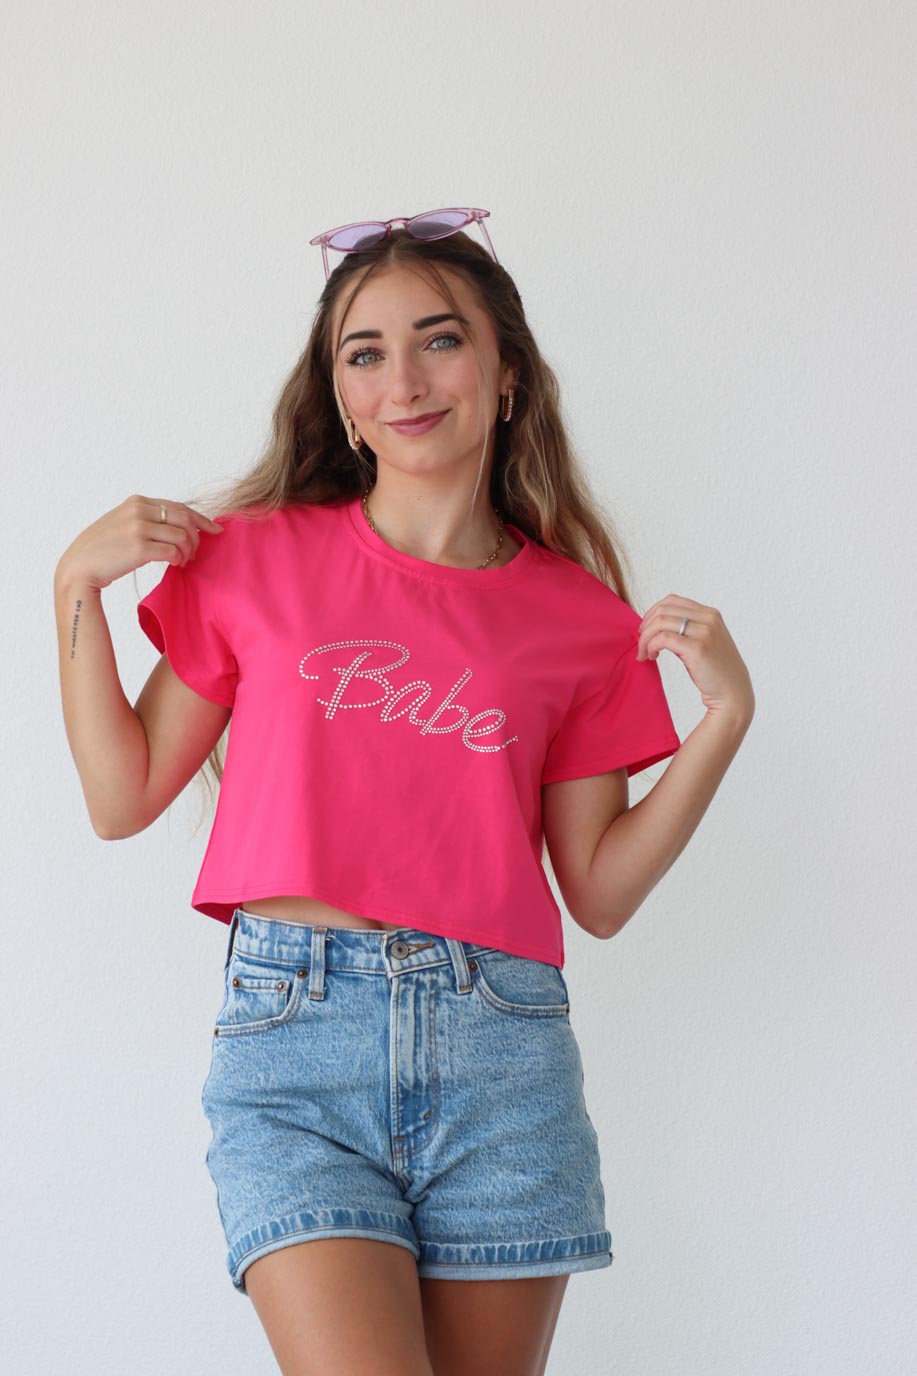 girl wearing hot pink "babe" t-shirt